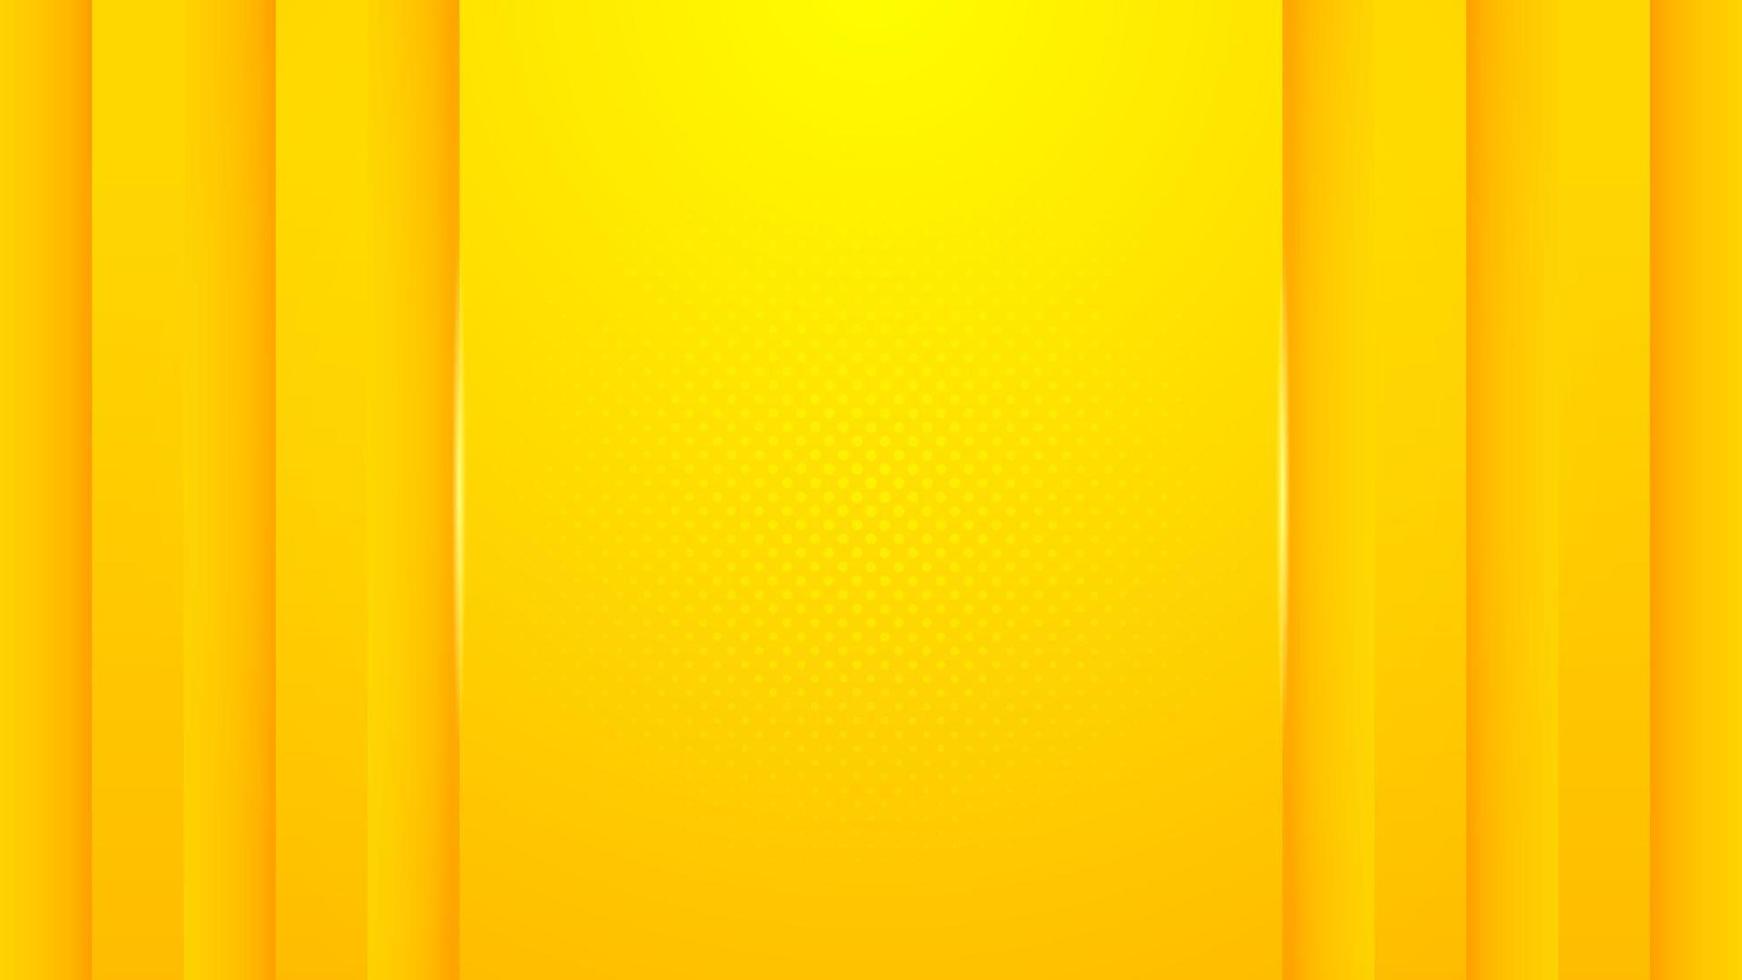 minimalismo abstracto fondo amarillo con vector de formas dinámicas en relieve 3d, diseño de banner con espacio vacío para colocar texto u objeto